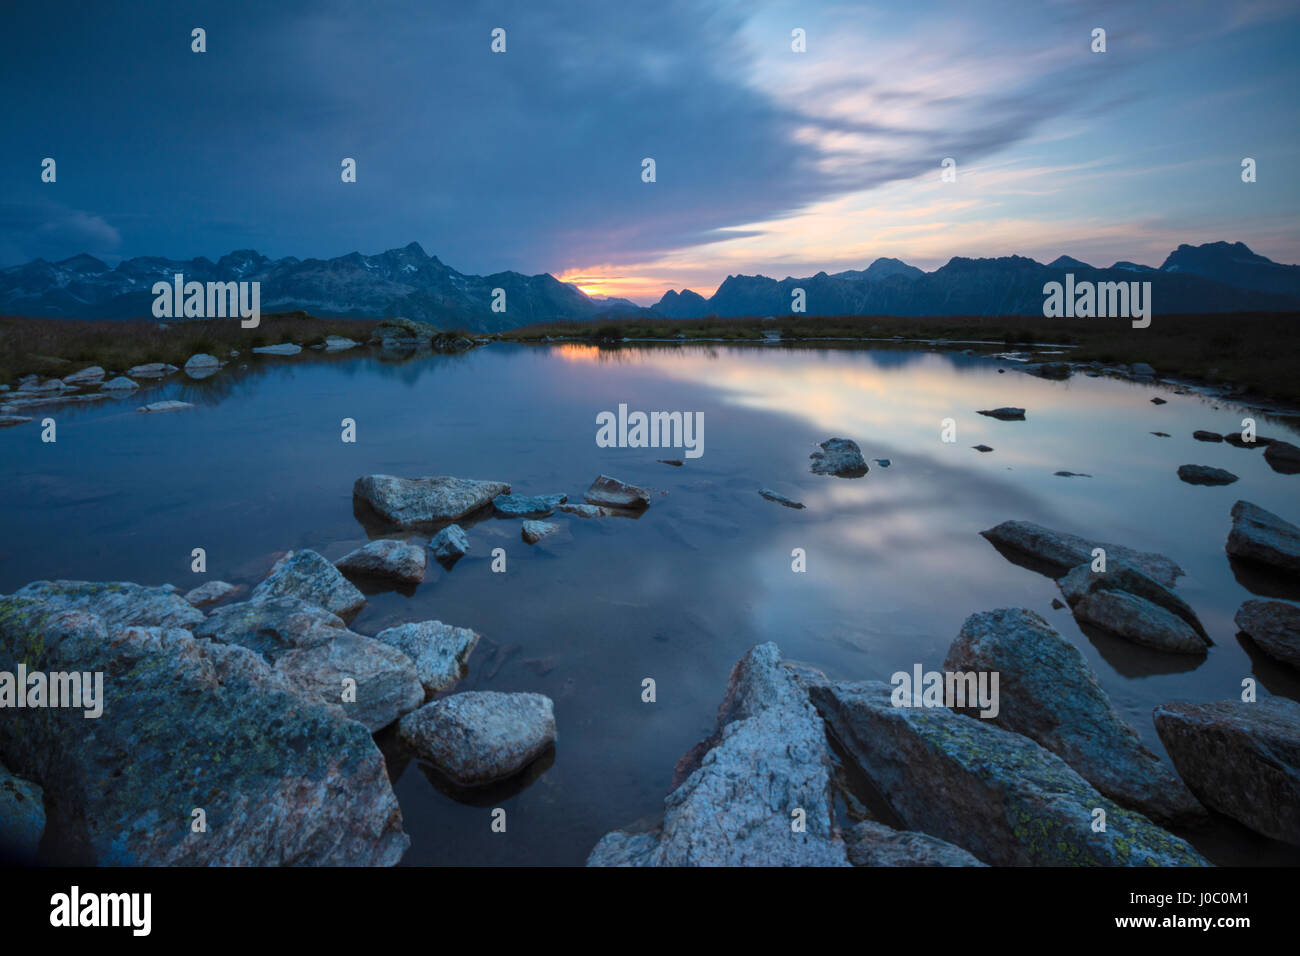 Le luci del tramonto riflesso nel lago alpino Muottas Muragl, Samedan, Canton Grigioni, Engadina, Svizzera Foto Stock